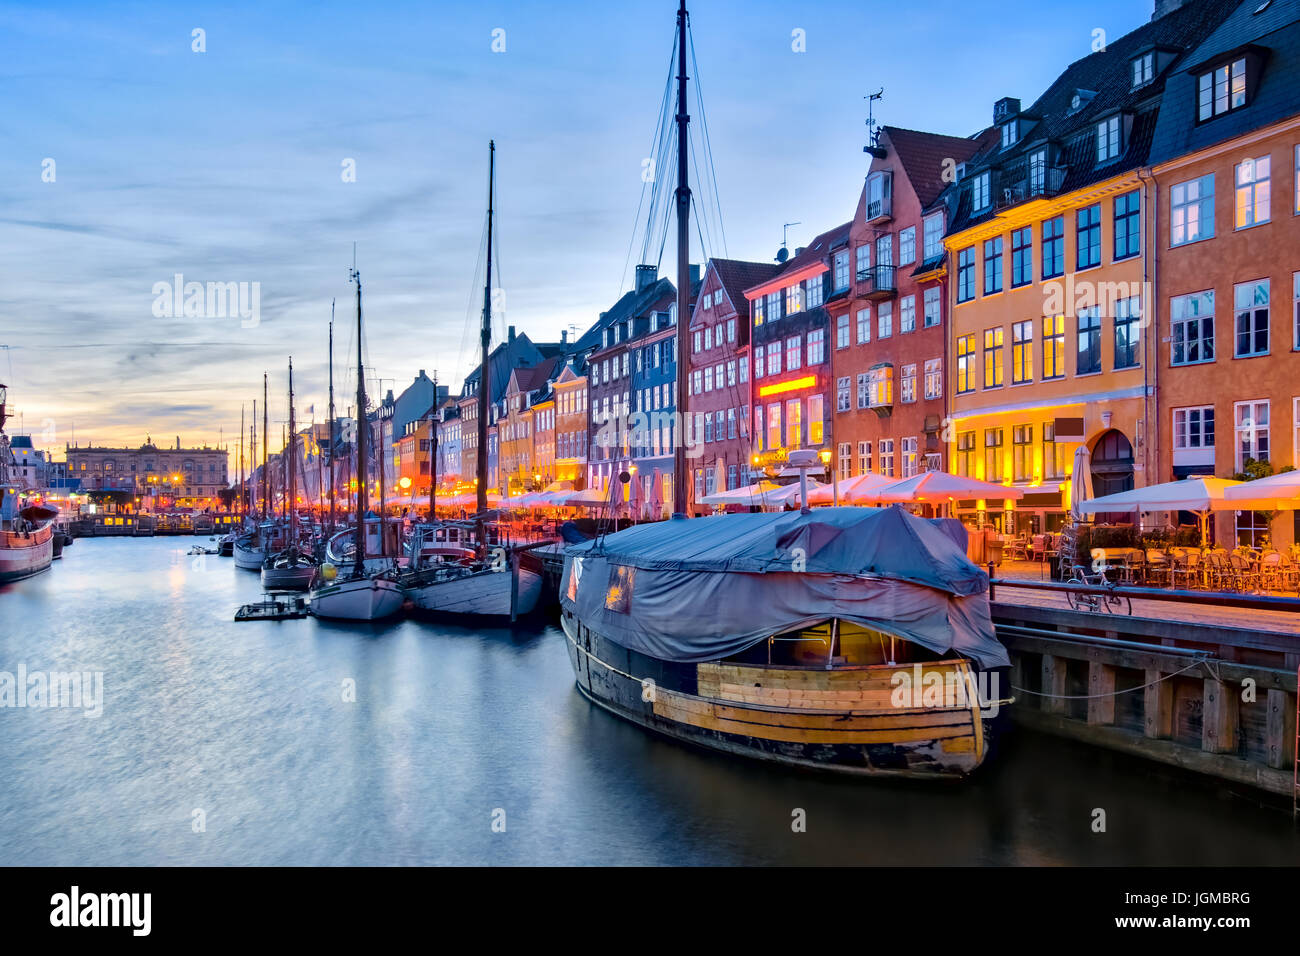 Avec son pittoresque port de Nyhavn avec de vieux navires à voile et les façades colorées des maisons anciennes à Copenhague, Danemark. Banque D'Images